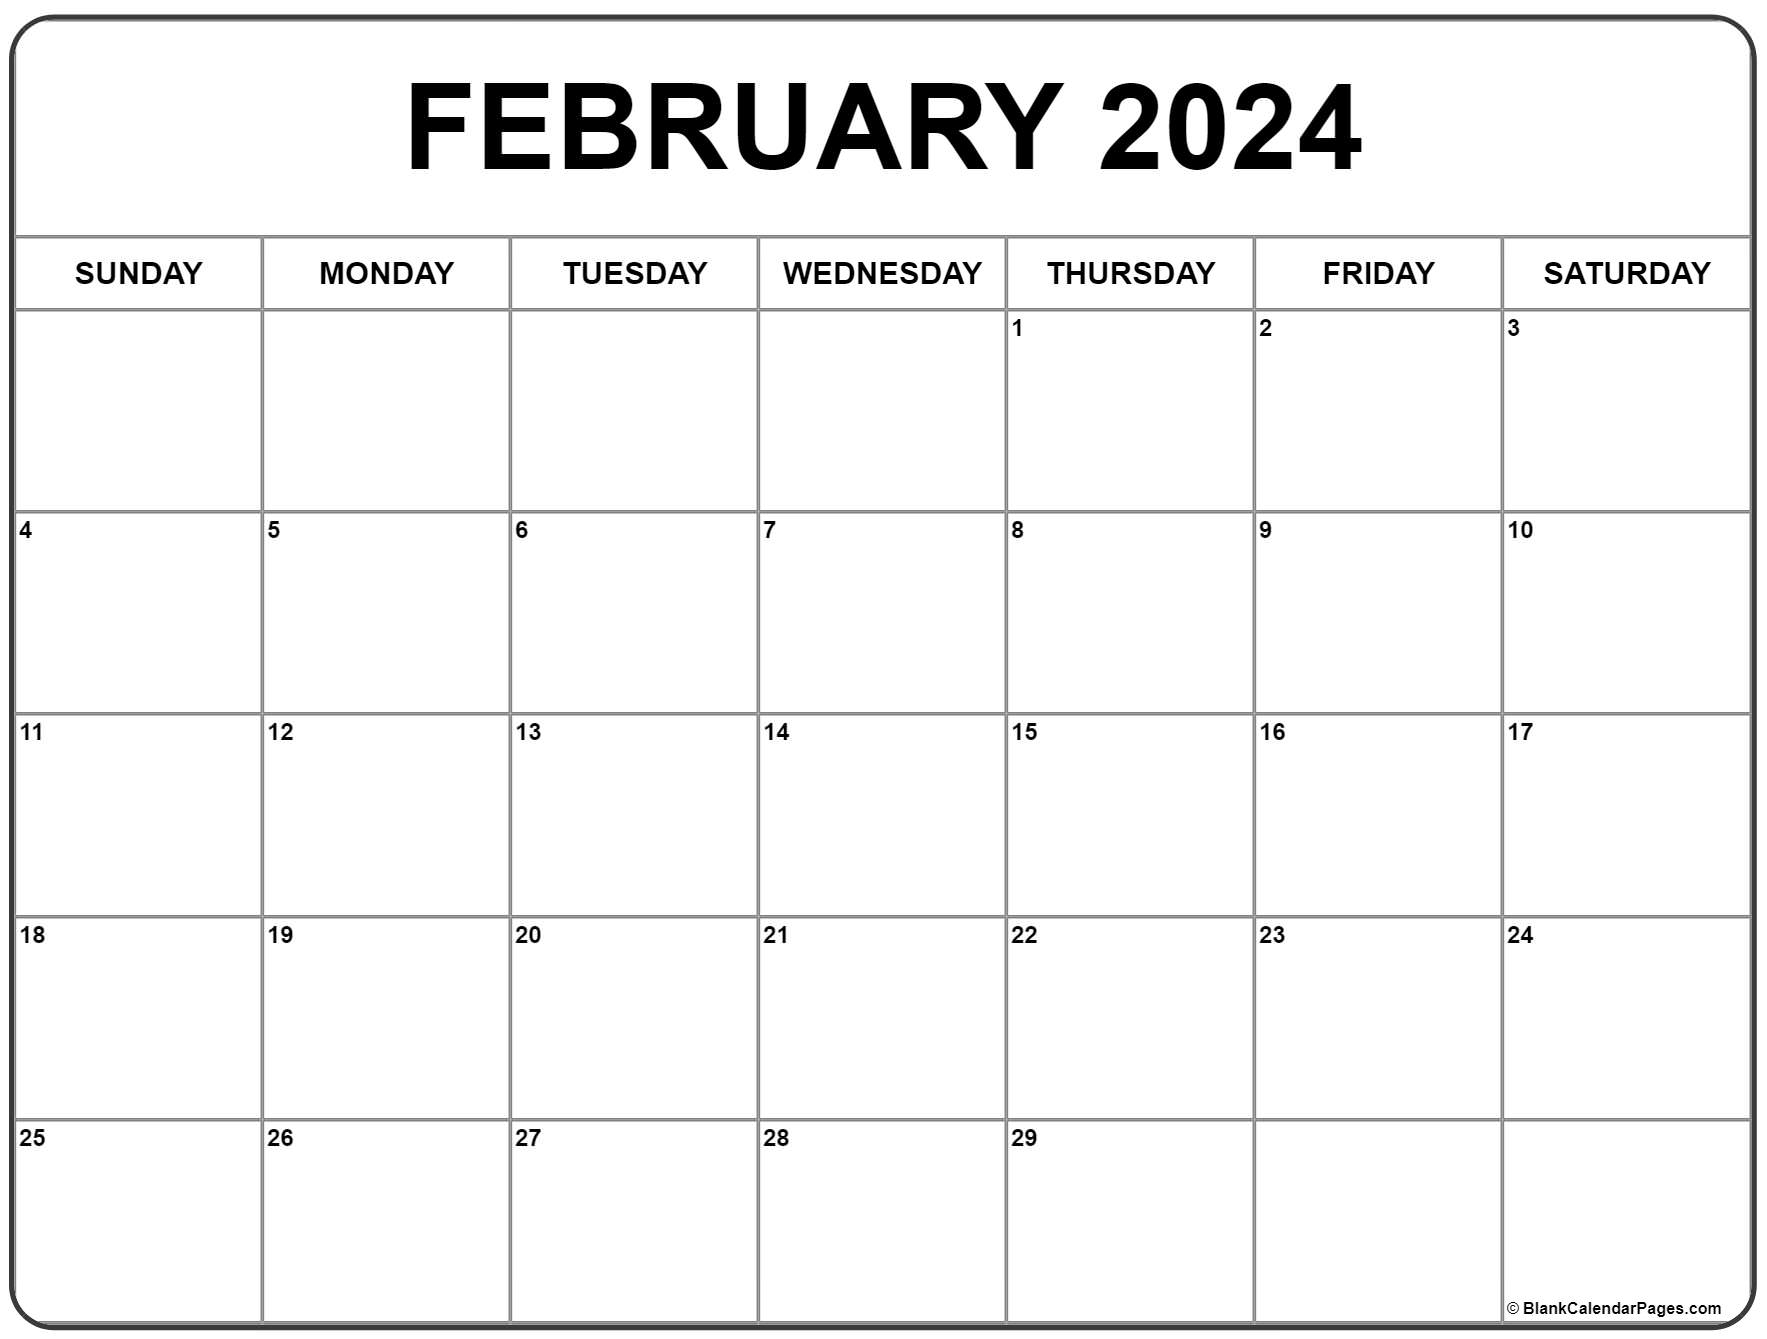 February 2024 Calendar | Free Printable Calendar for Printable Blank February 2024 Calendar